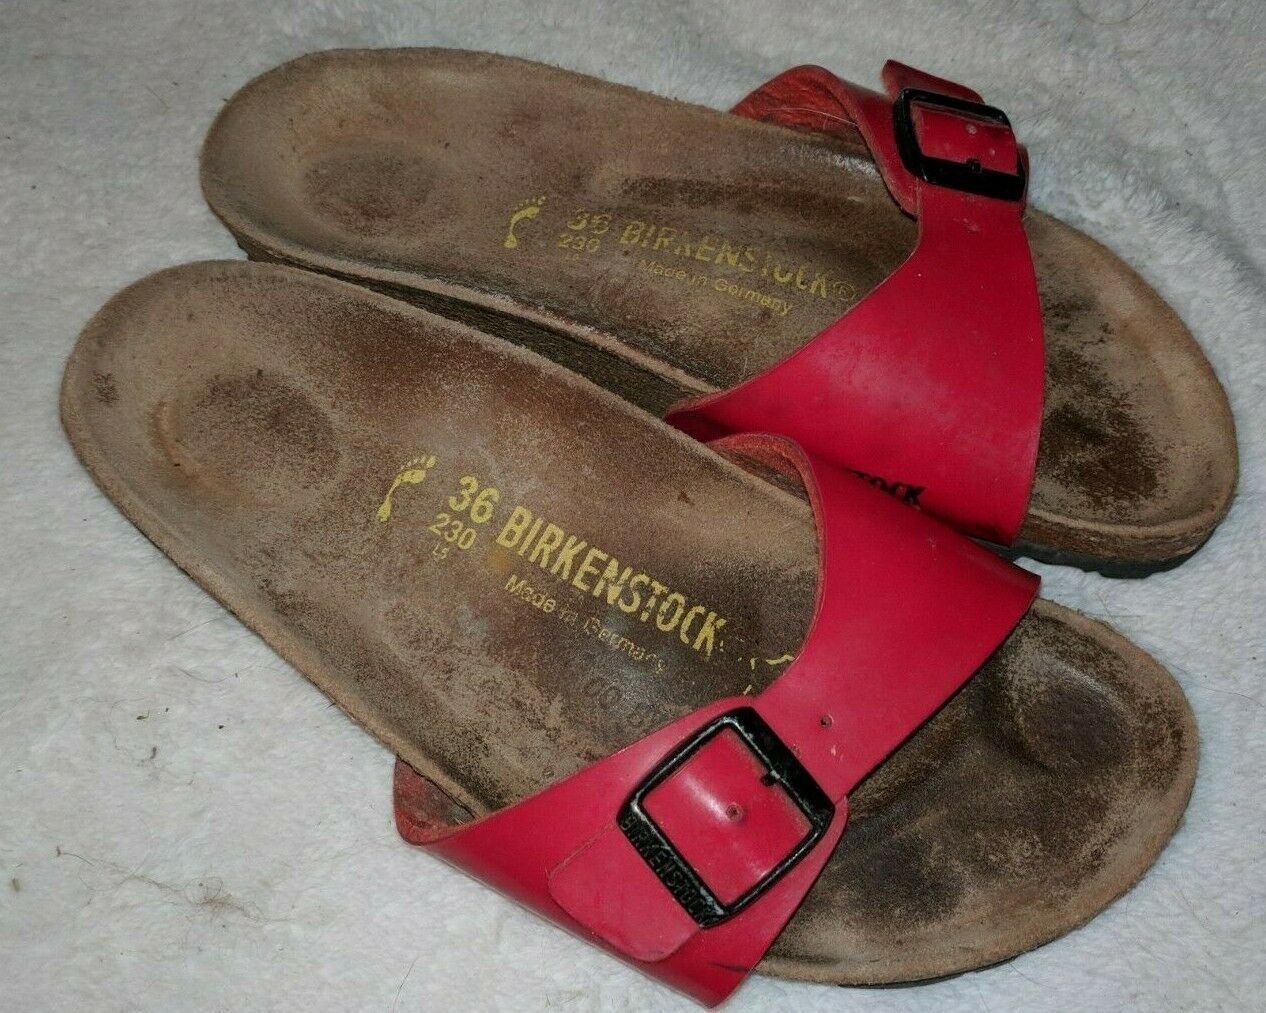 one strap slide sandals